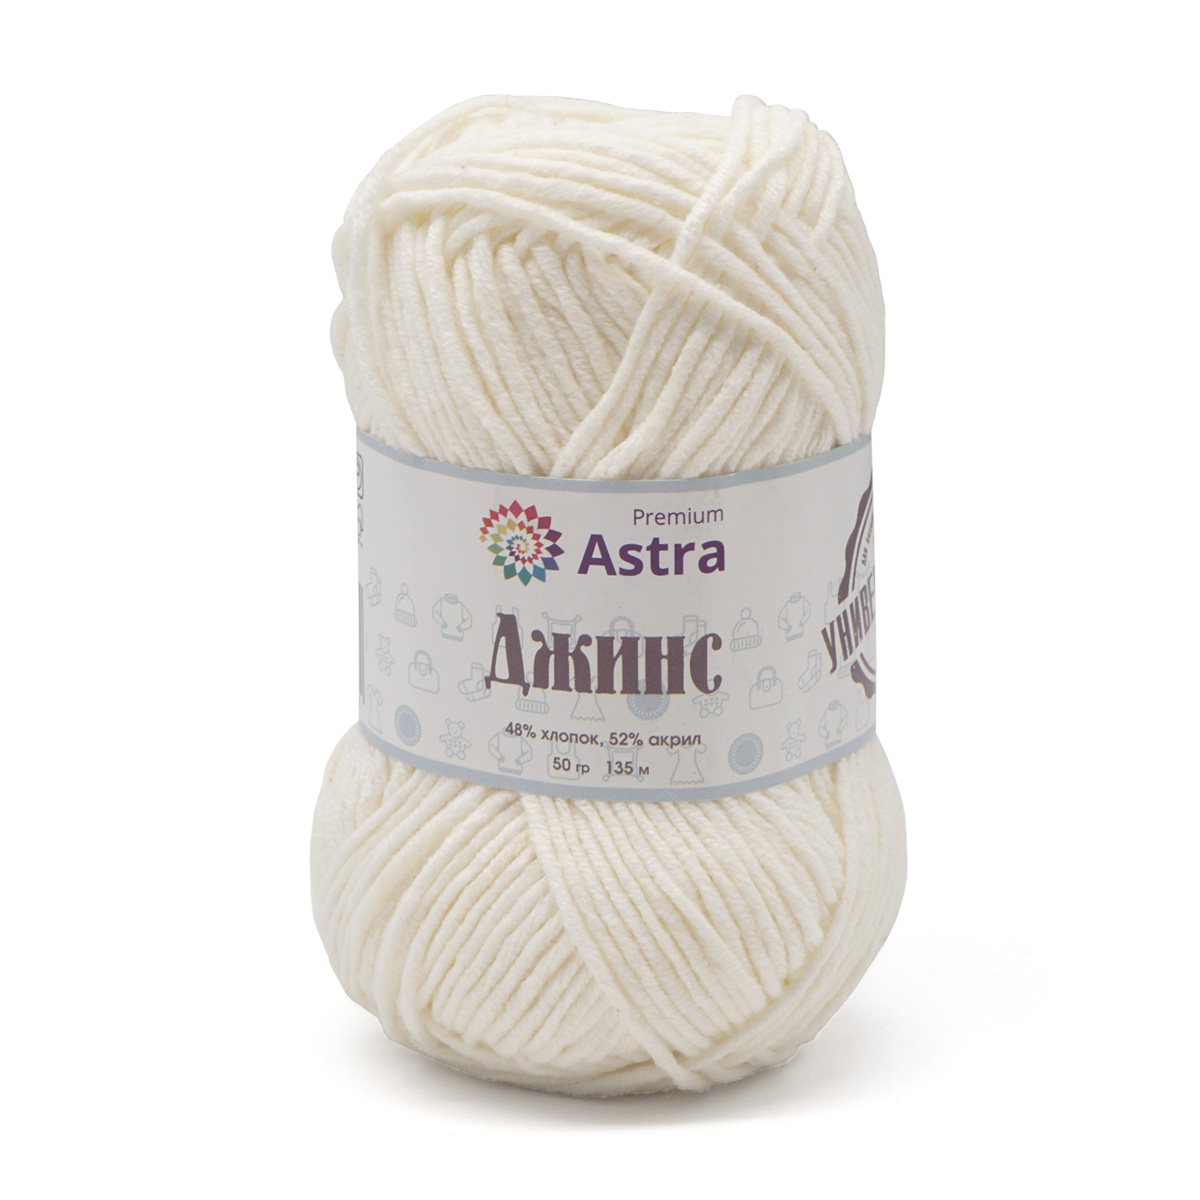 Пряжа для вязания Astra Premium джинс для повседневной одежды акрил хлопок 50 гр 135 м 020 молочный 4 мотка - фото 9